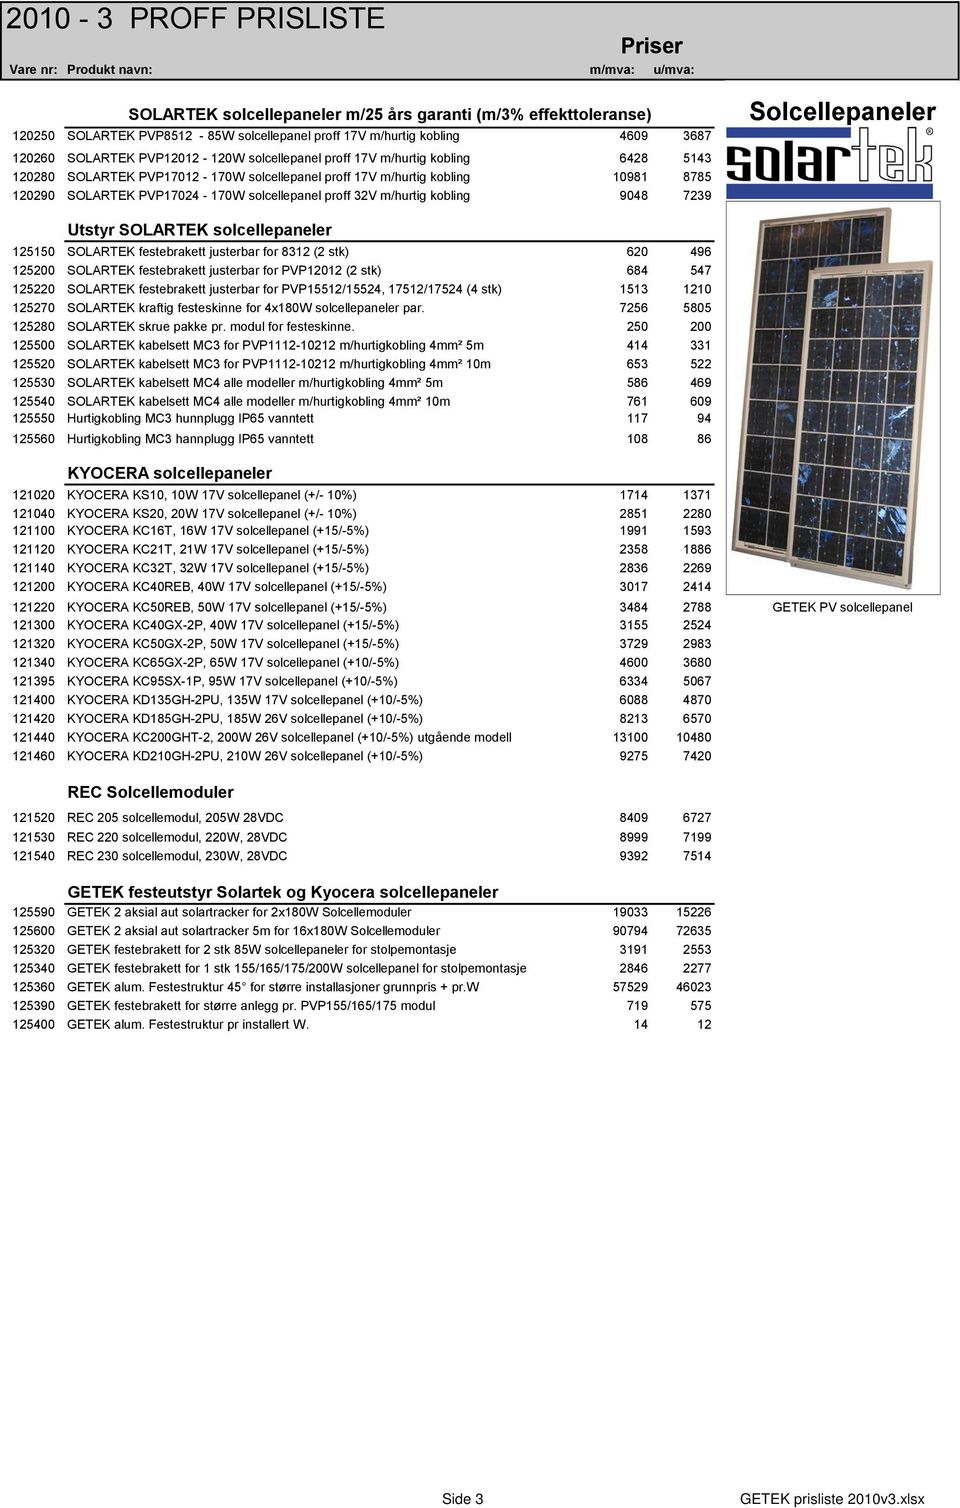 Solcellepaneler Utstyr SOLARTEK solcellepaneler 125150 SOLARTEK festebrakett justerbar for 8312 (2 stk) 620 496 125200 SOLARTEK festebrakett justerbar for PVP12012 (2 stk) 684 547 125220 SOLARTEK